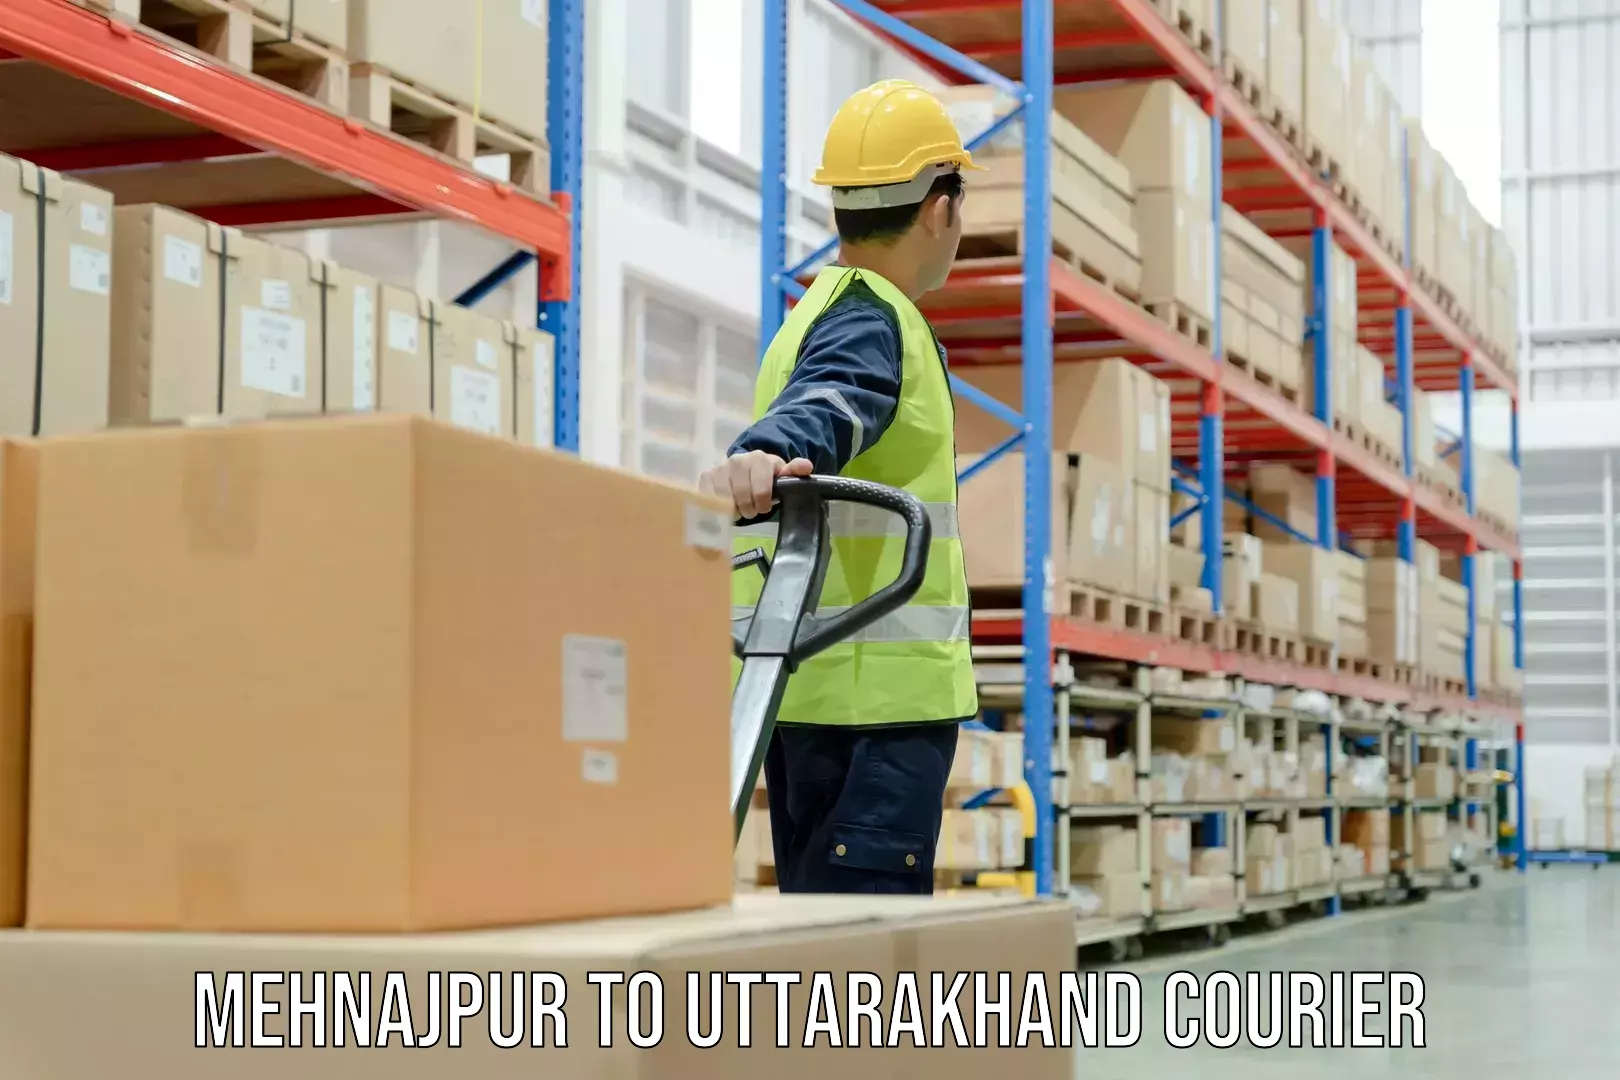 Cargo delivery service Mehnajpur to Gumkhal